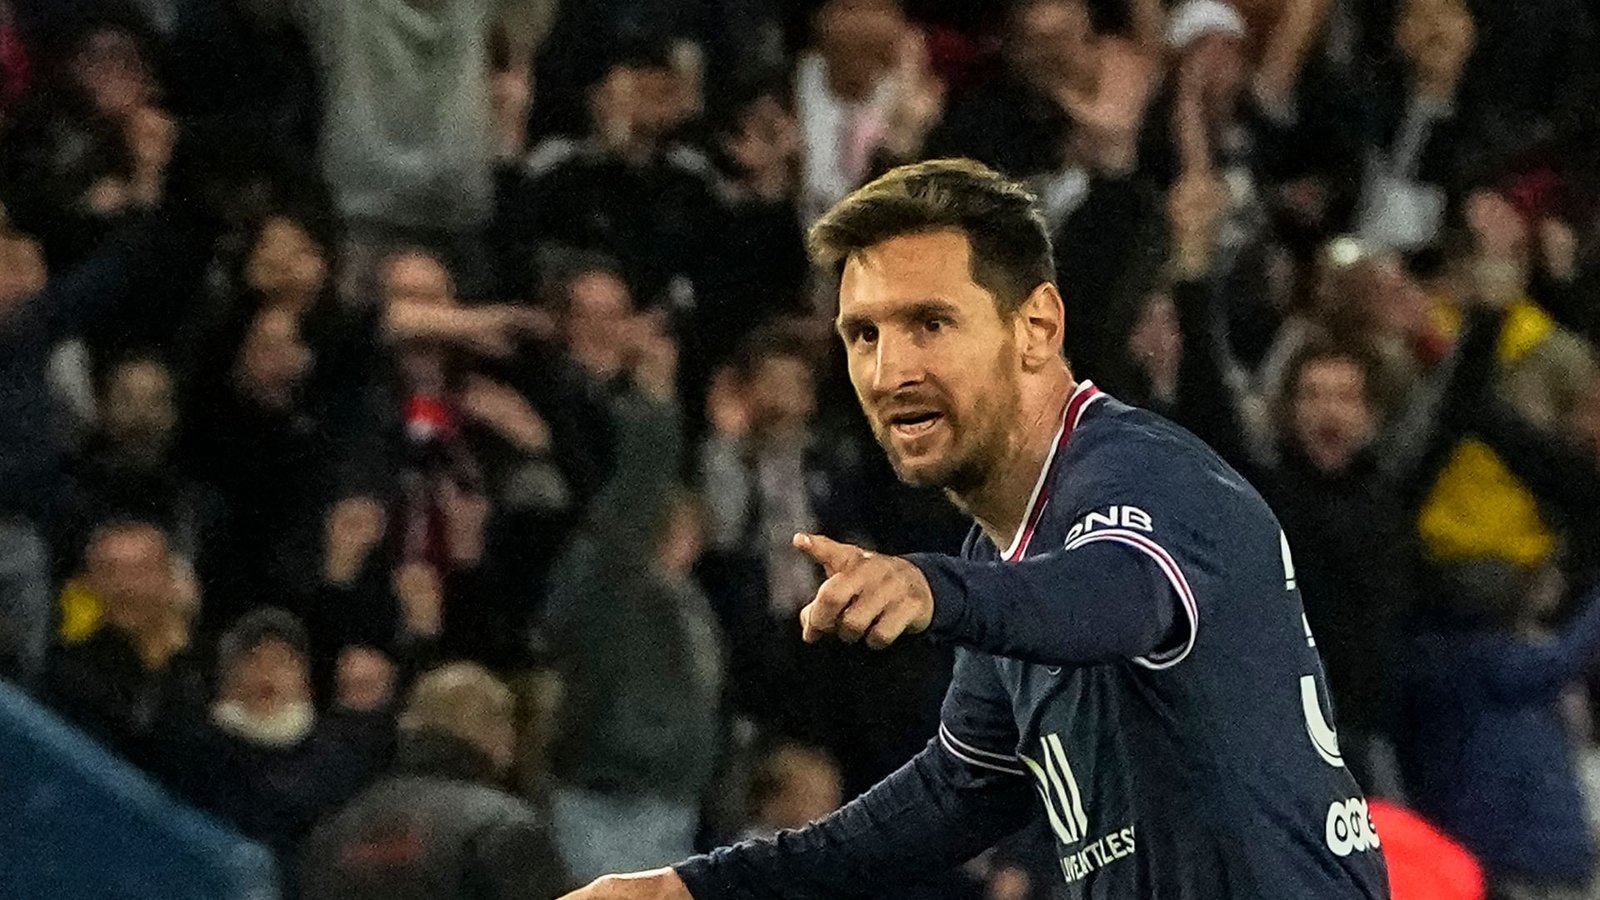 Der siebenmalige Weltfußballer Lionel Messi hat bei PSG einen Vertrag bis 30. Juni 2023.Foto: Michel Euler/AP/dpa